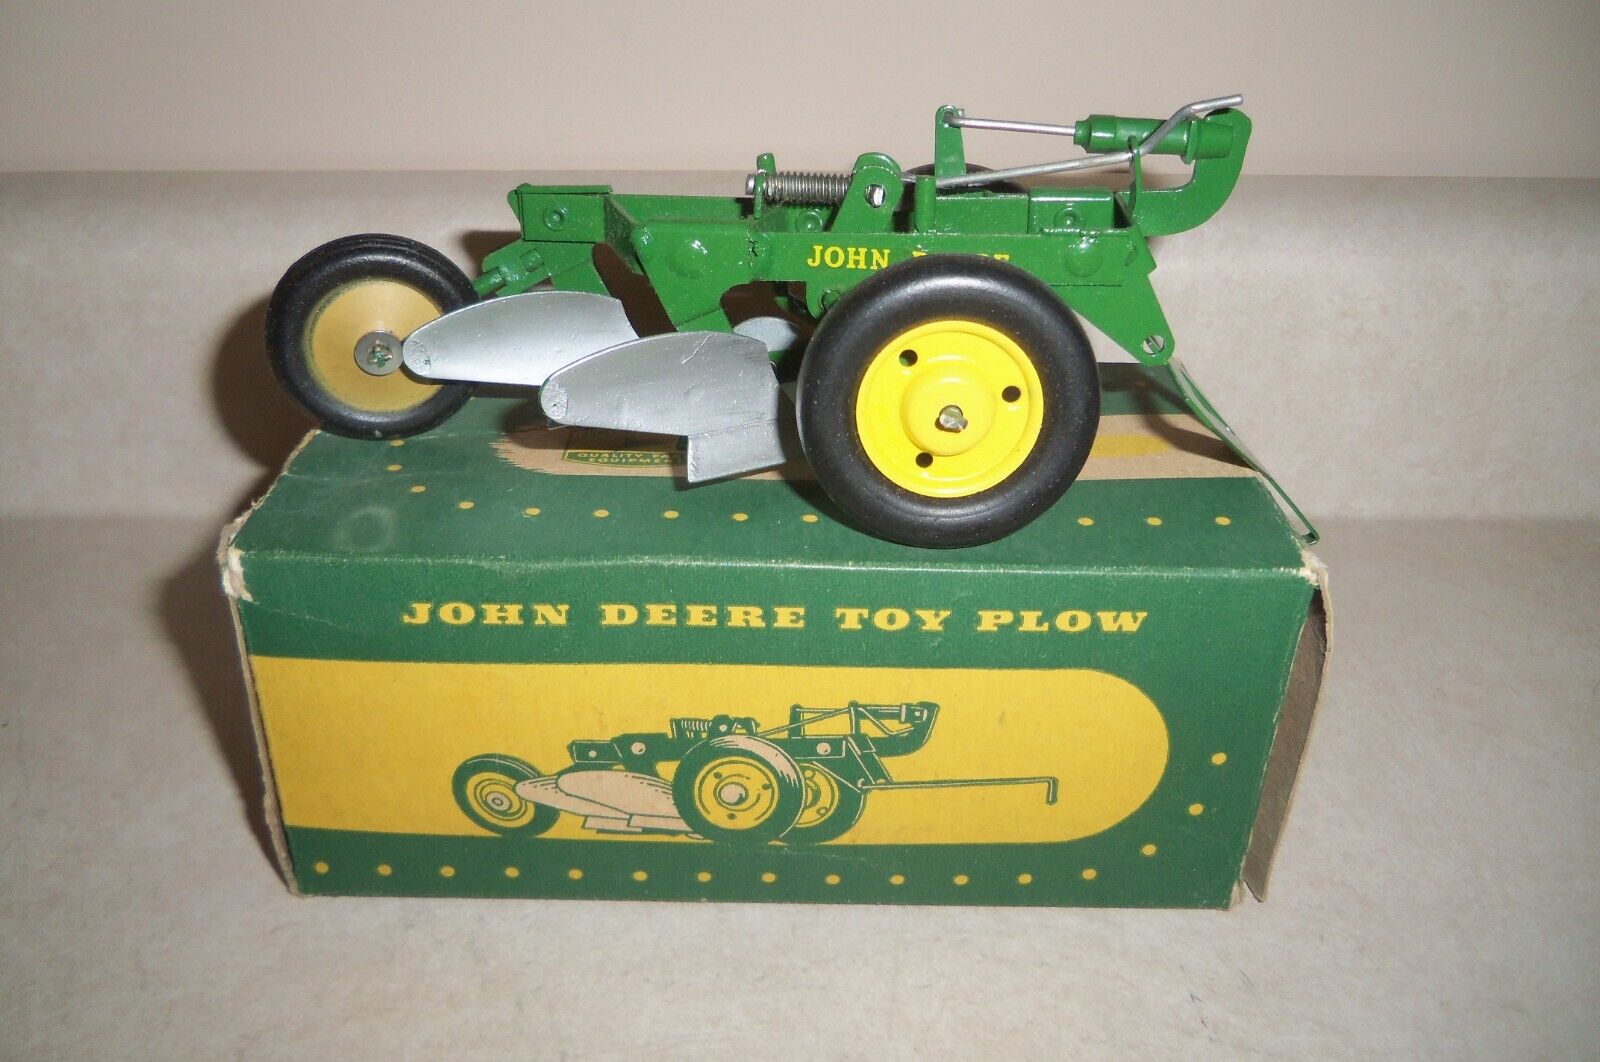 JOHN DEERE 2 BOTTOM PLOW in BOX ERTL ESKA Vintage Farm Toy